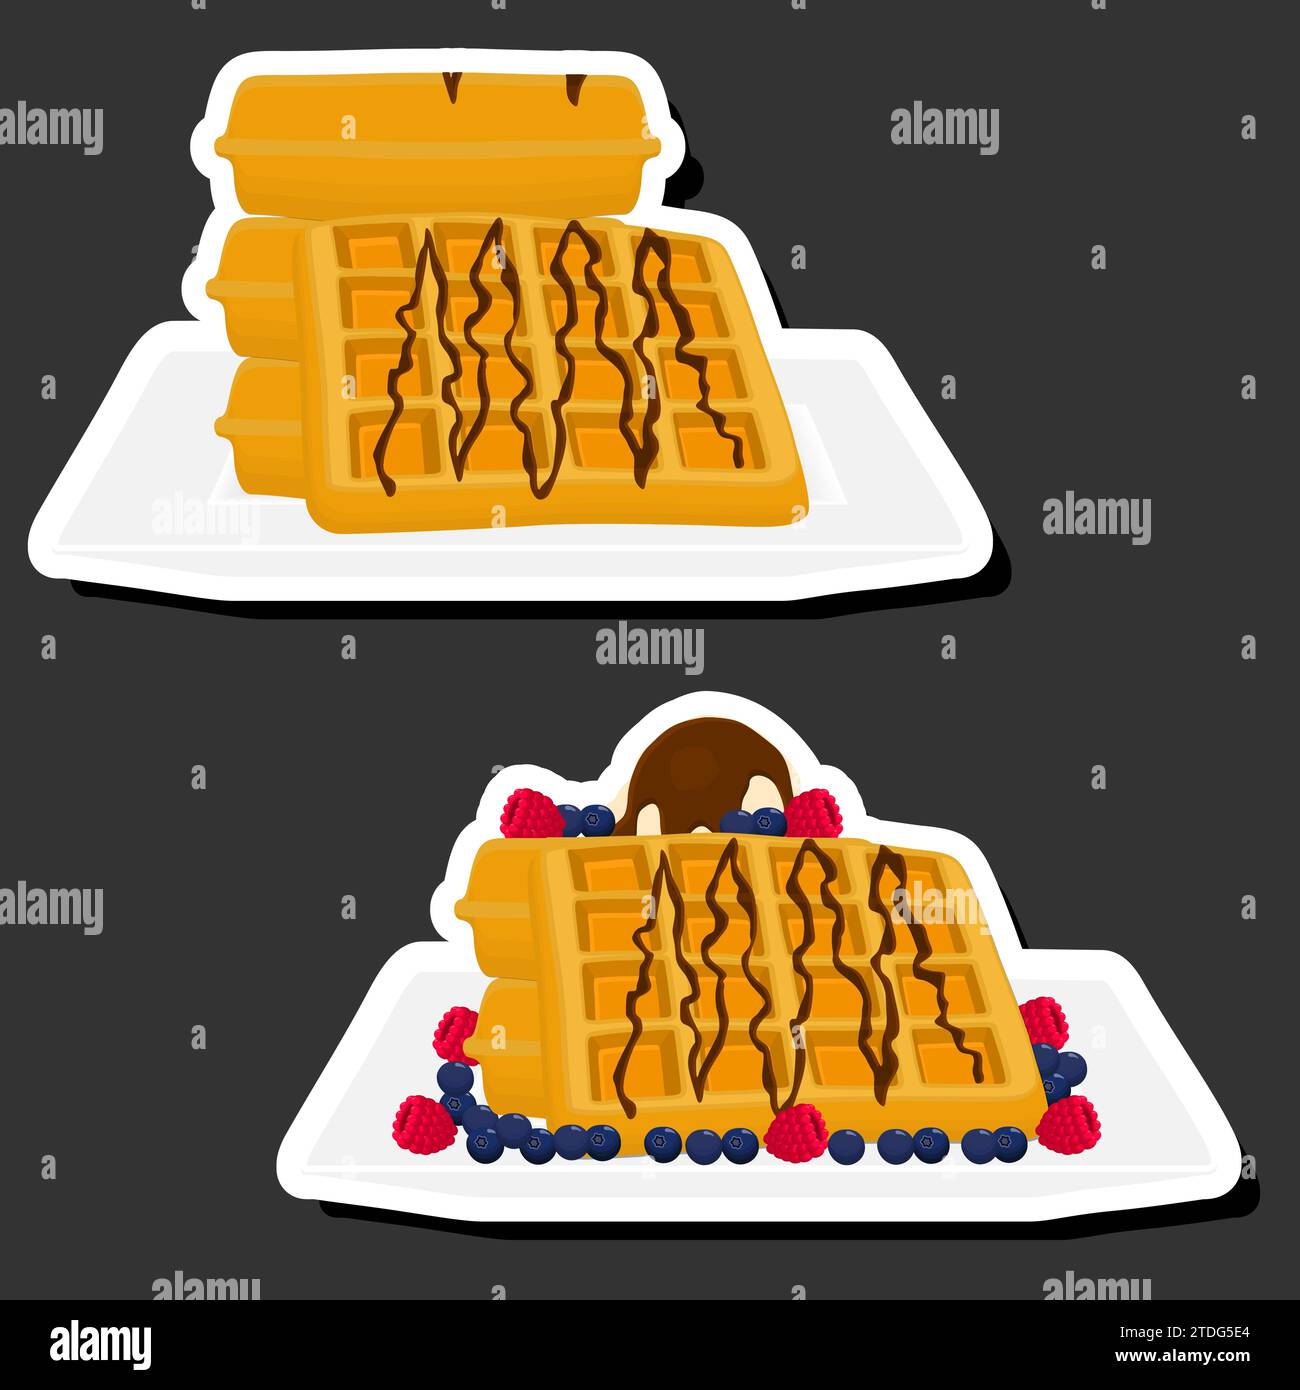 Illustrazione del gelato a tema con cialde con celle, biscotti appetitosi da dessert, cialde con gustosi biscotti sagomati, gelato morbido fresco, waffle Illustrazione Vettoriale